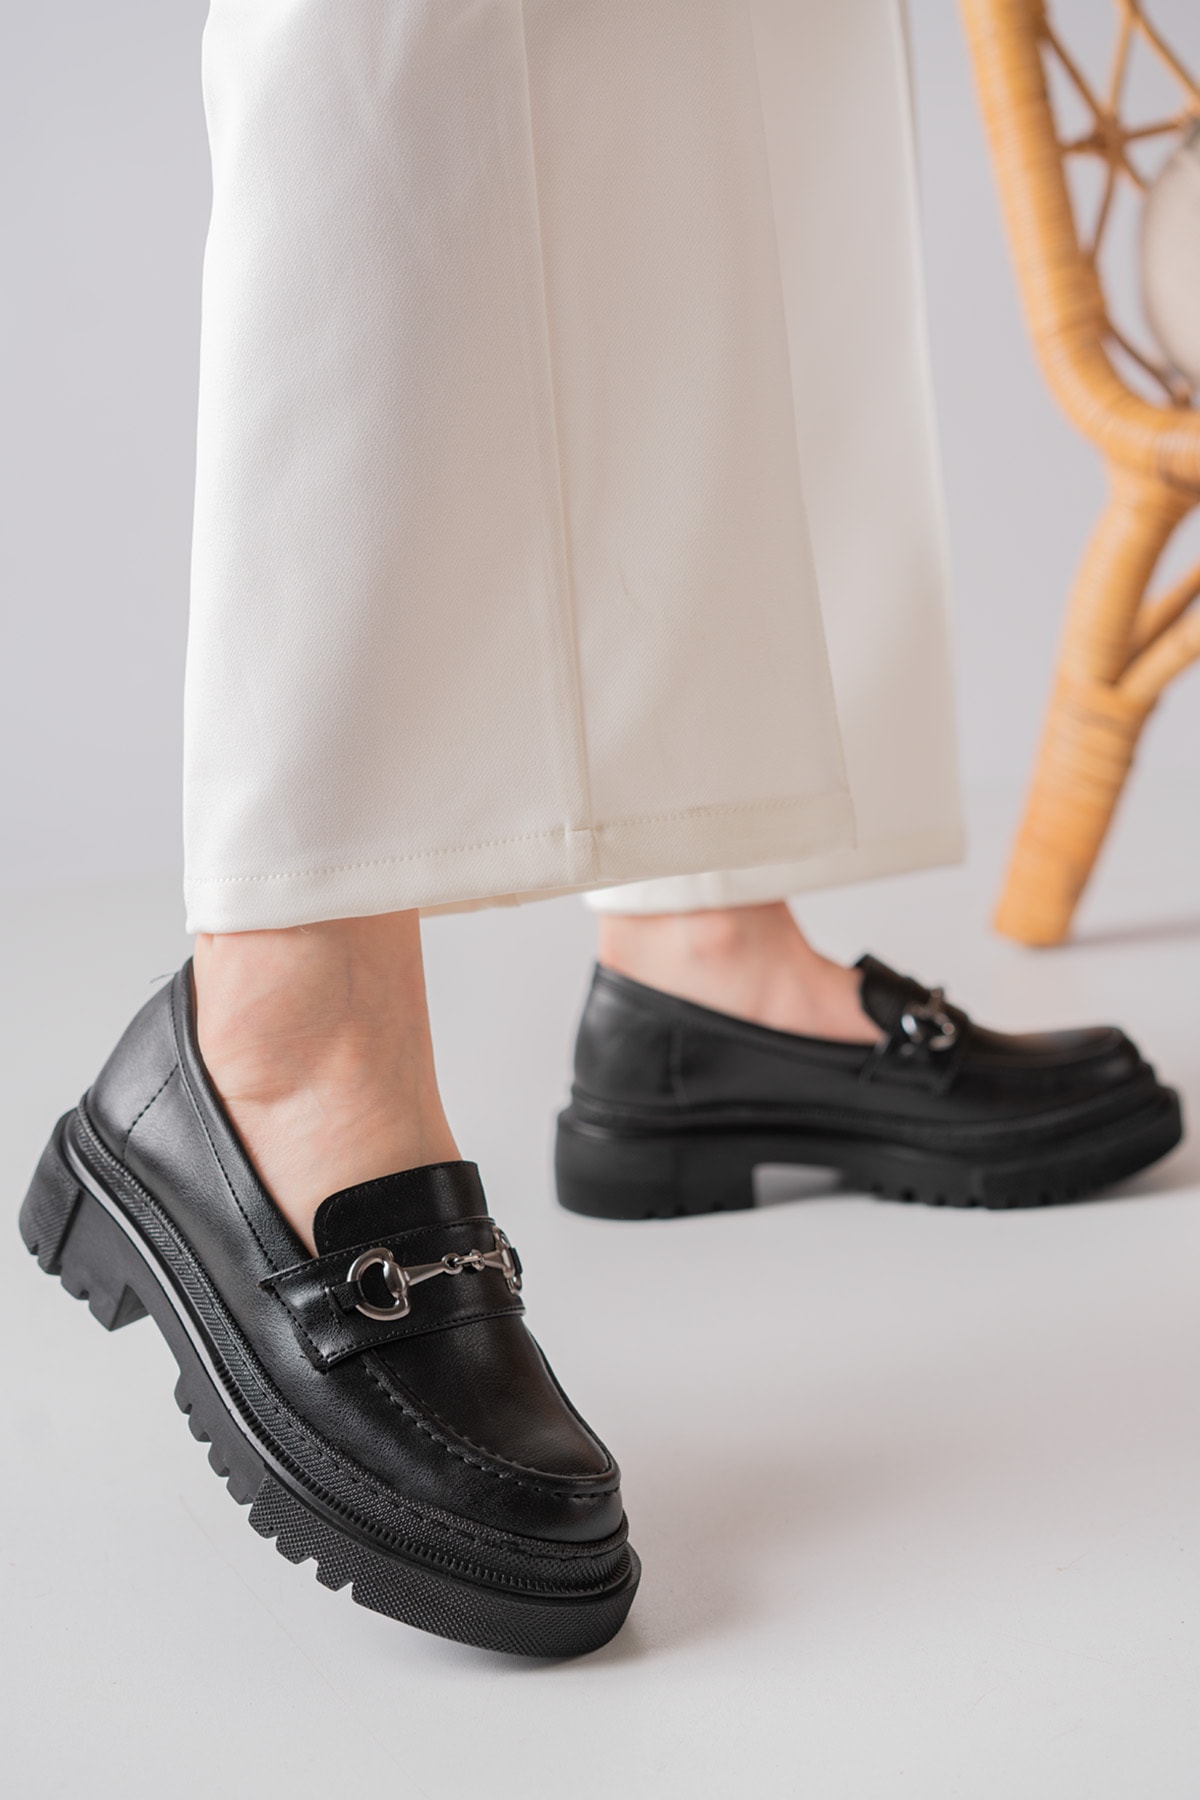 GNY AYAKKABI Kadın Platin Tokalı Siyah Kalın Taban Loafer Makosen Ayakkabı ON9725